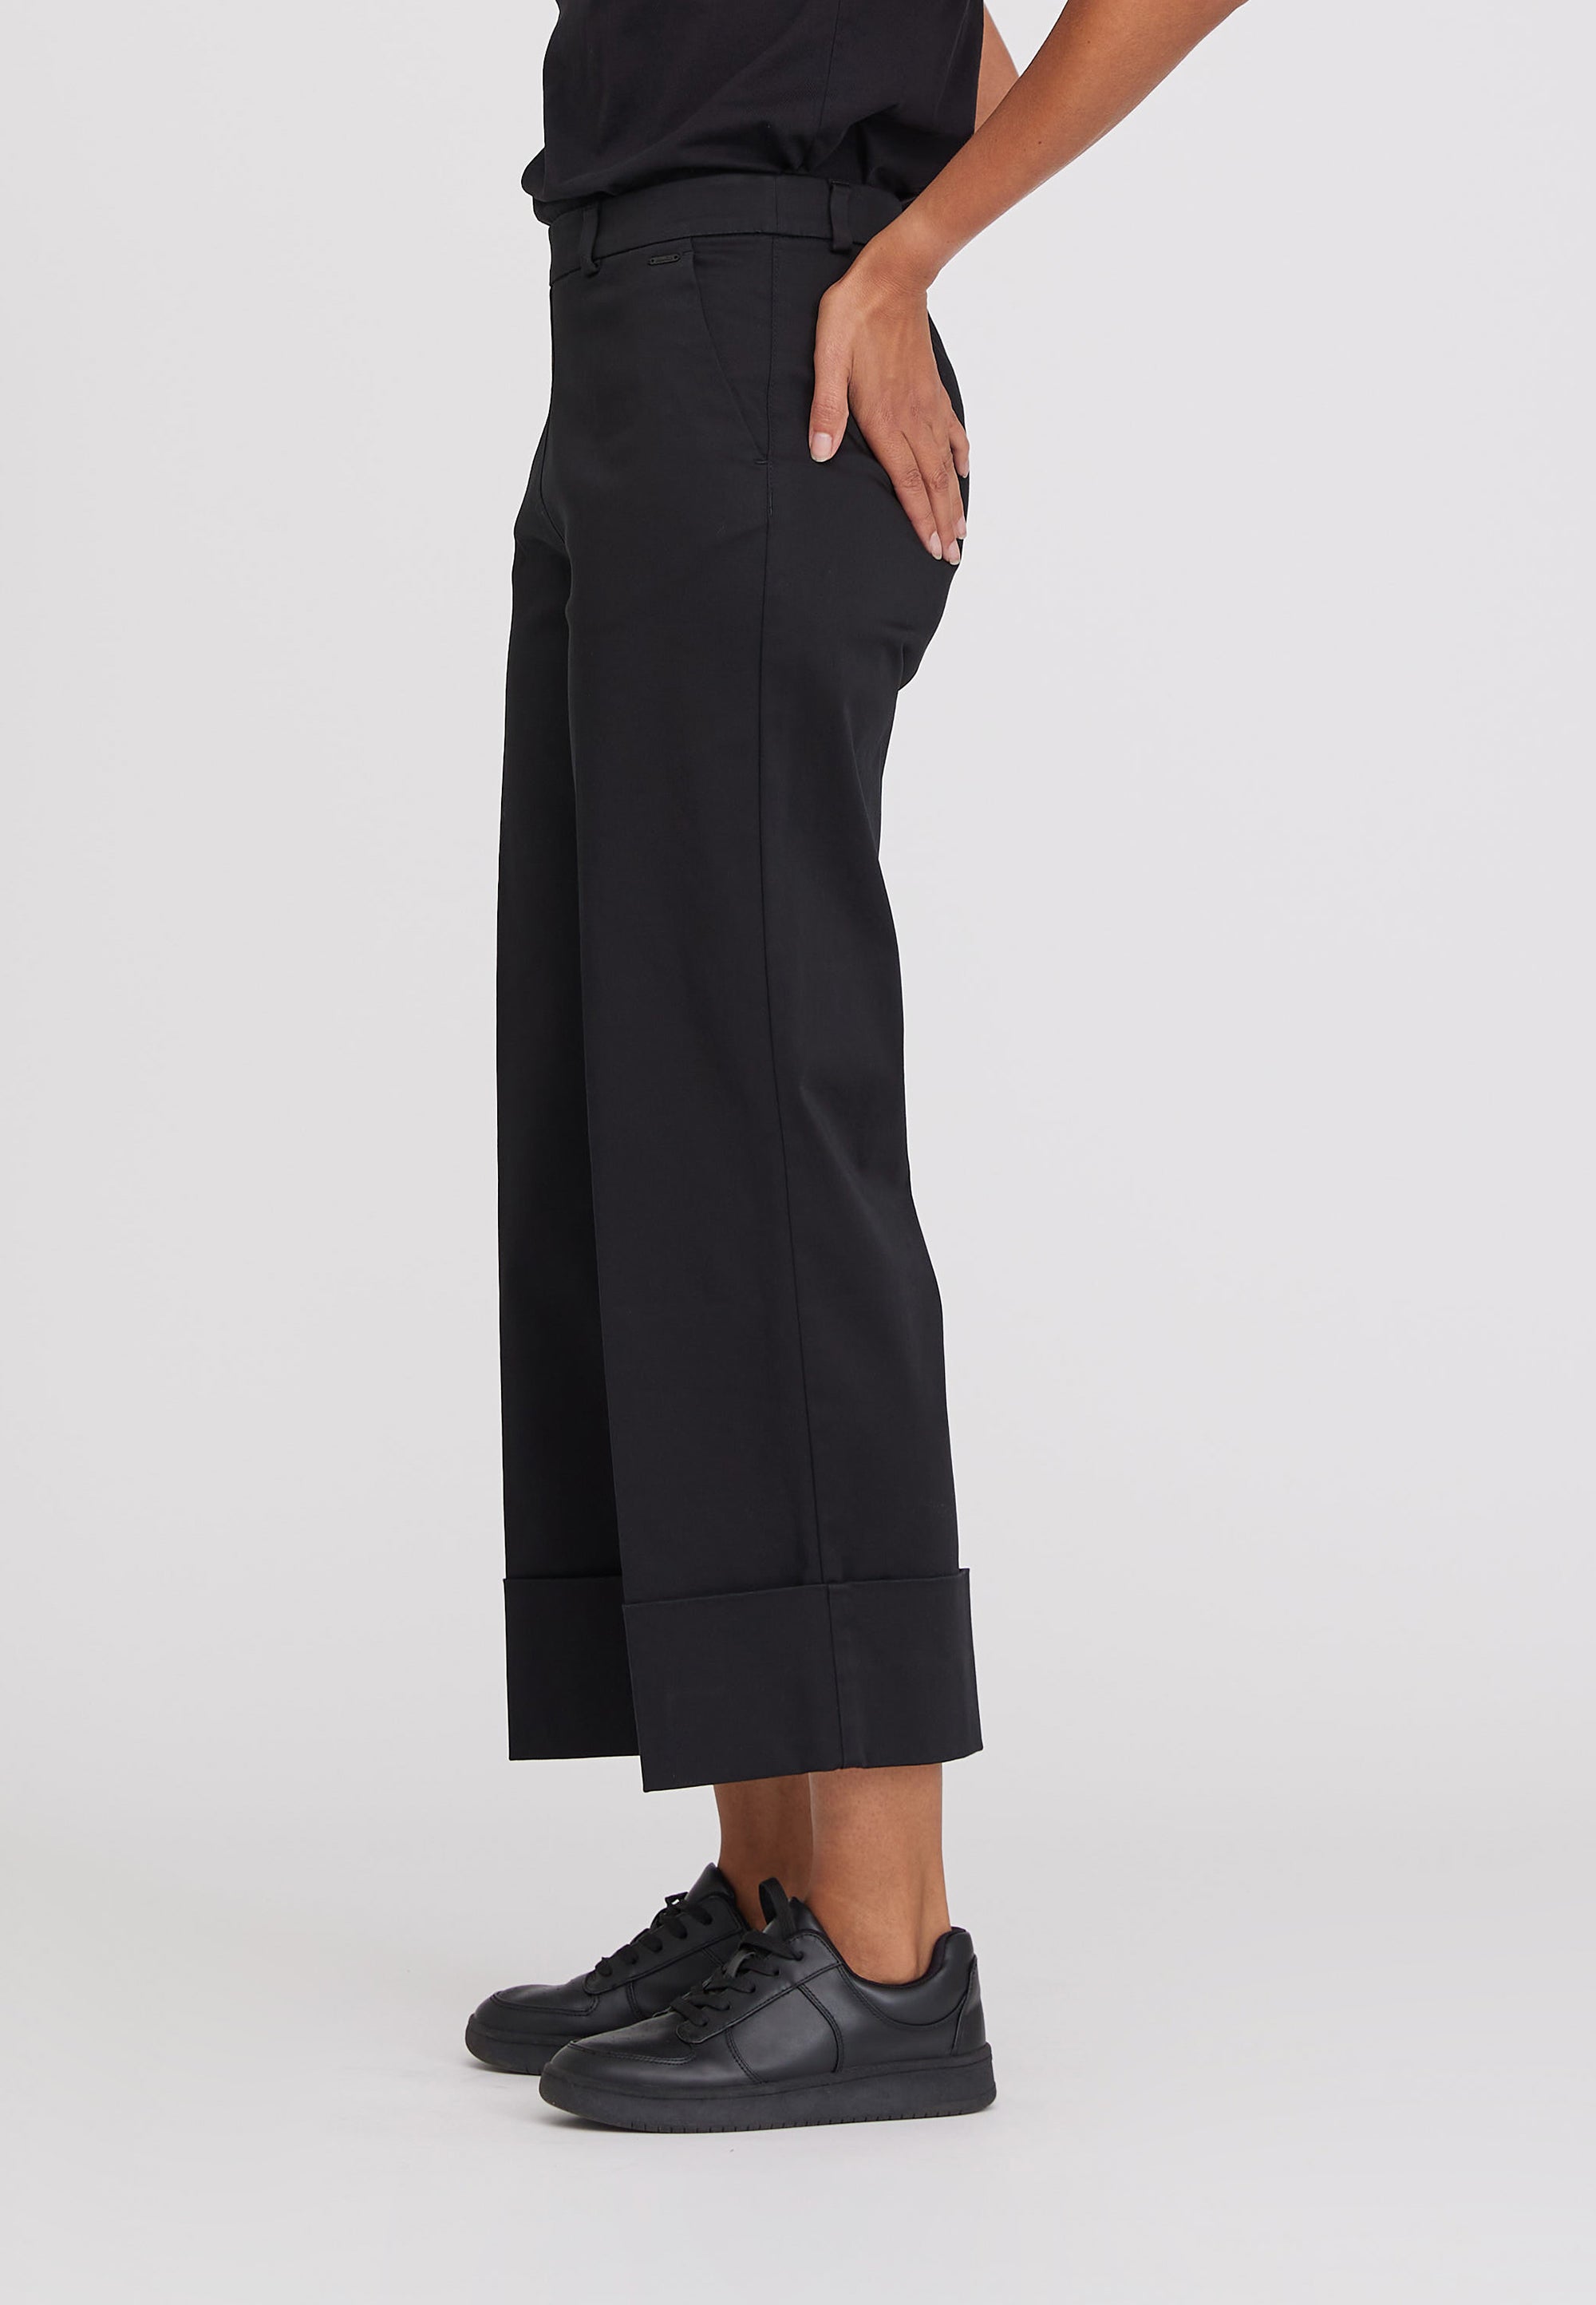 LAURIE Phoebe Turnup Loose Crop Trousers LOOSE 99105 Black